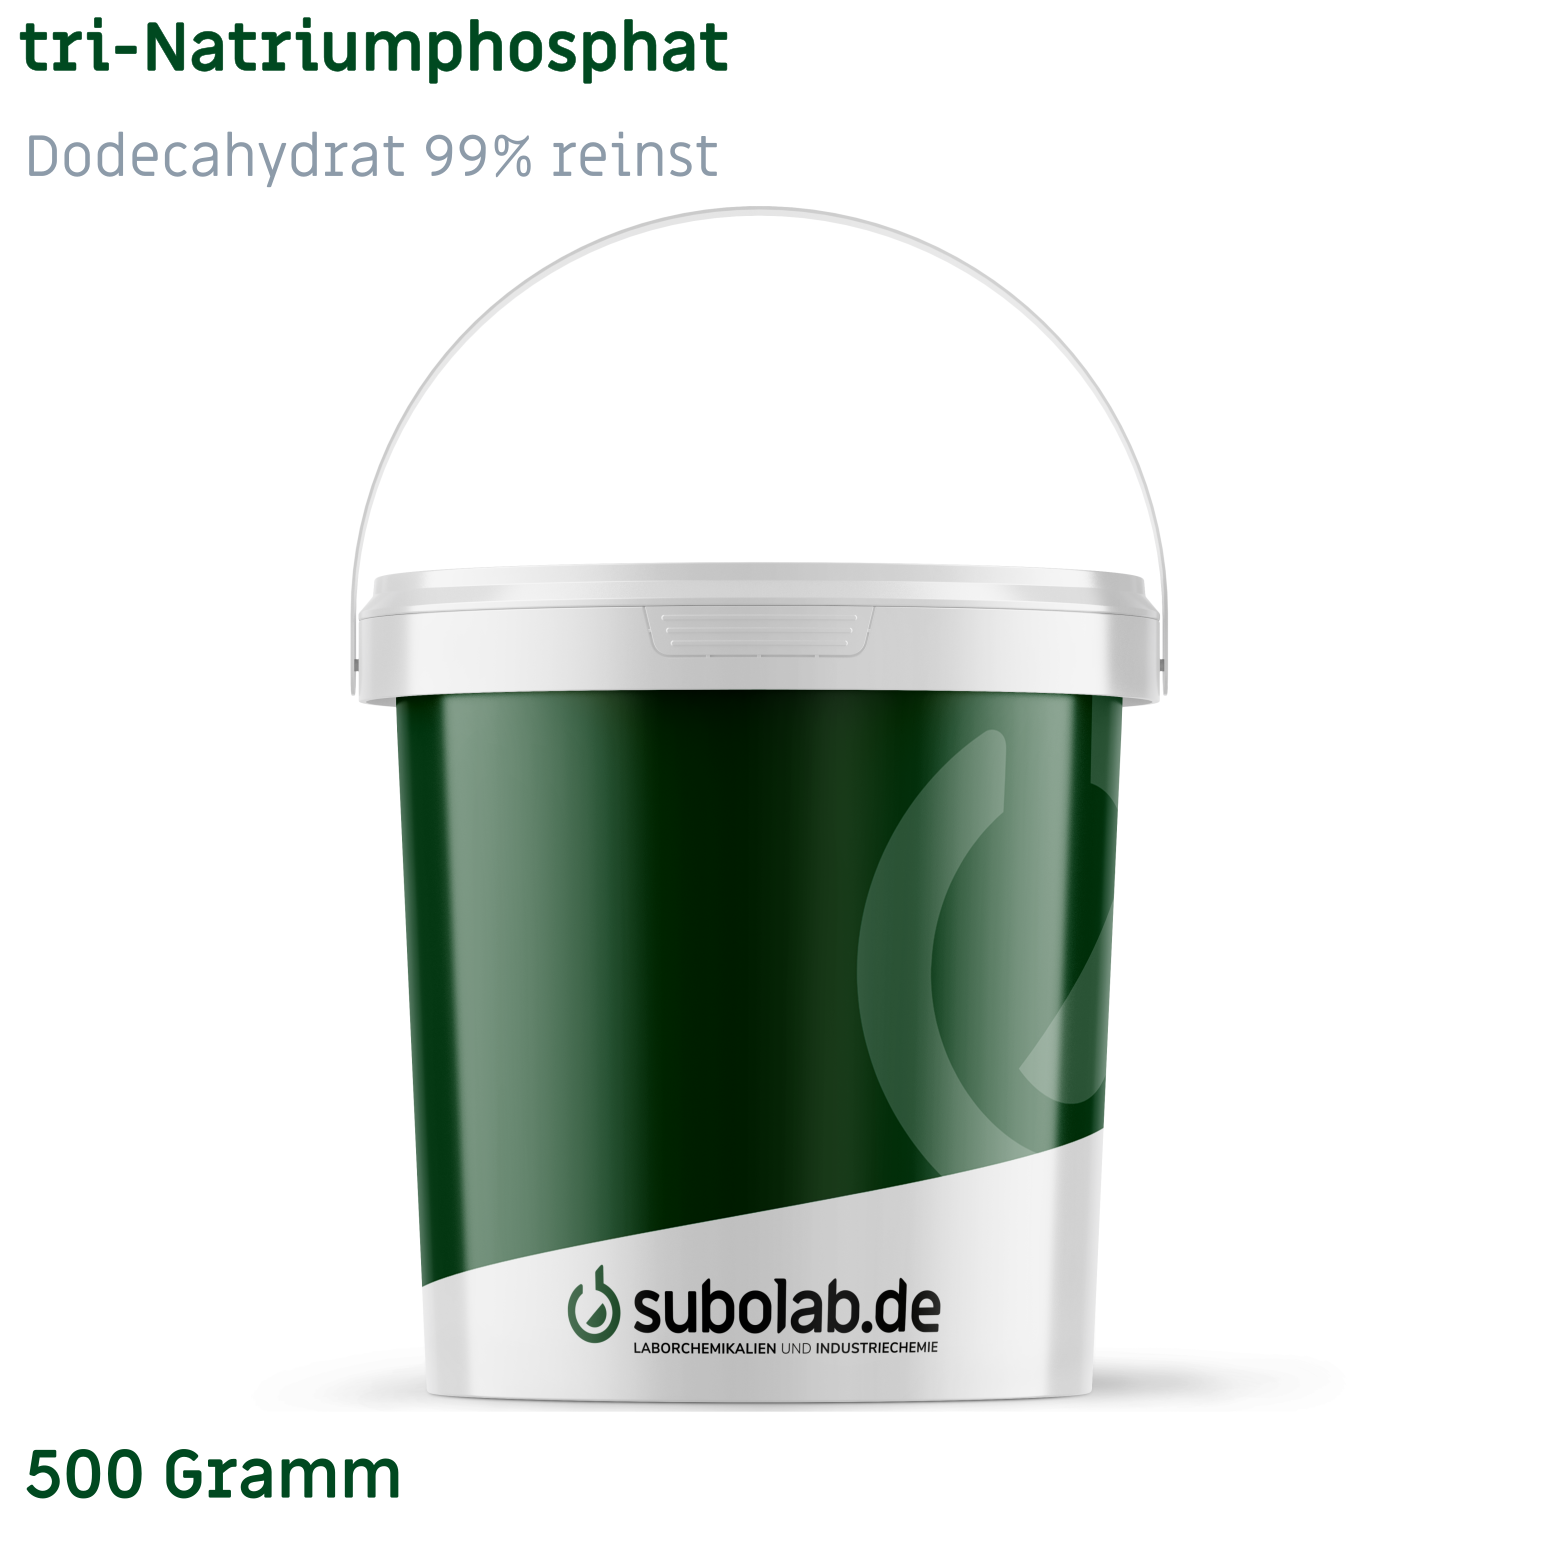 Bild von tri-Natriumphosphat - Dodecahydrat 99% reinst (500 Gramm)